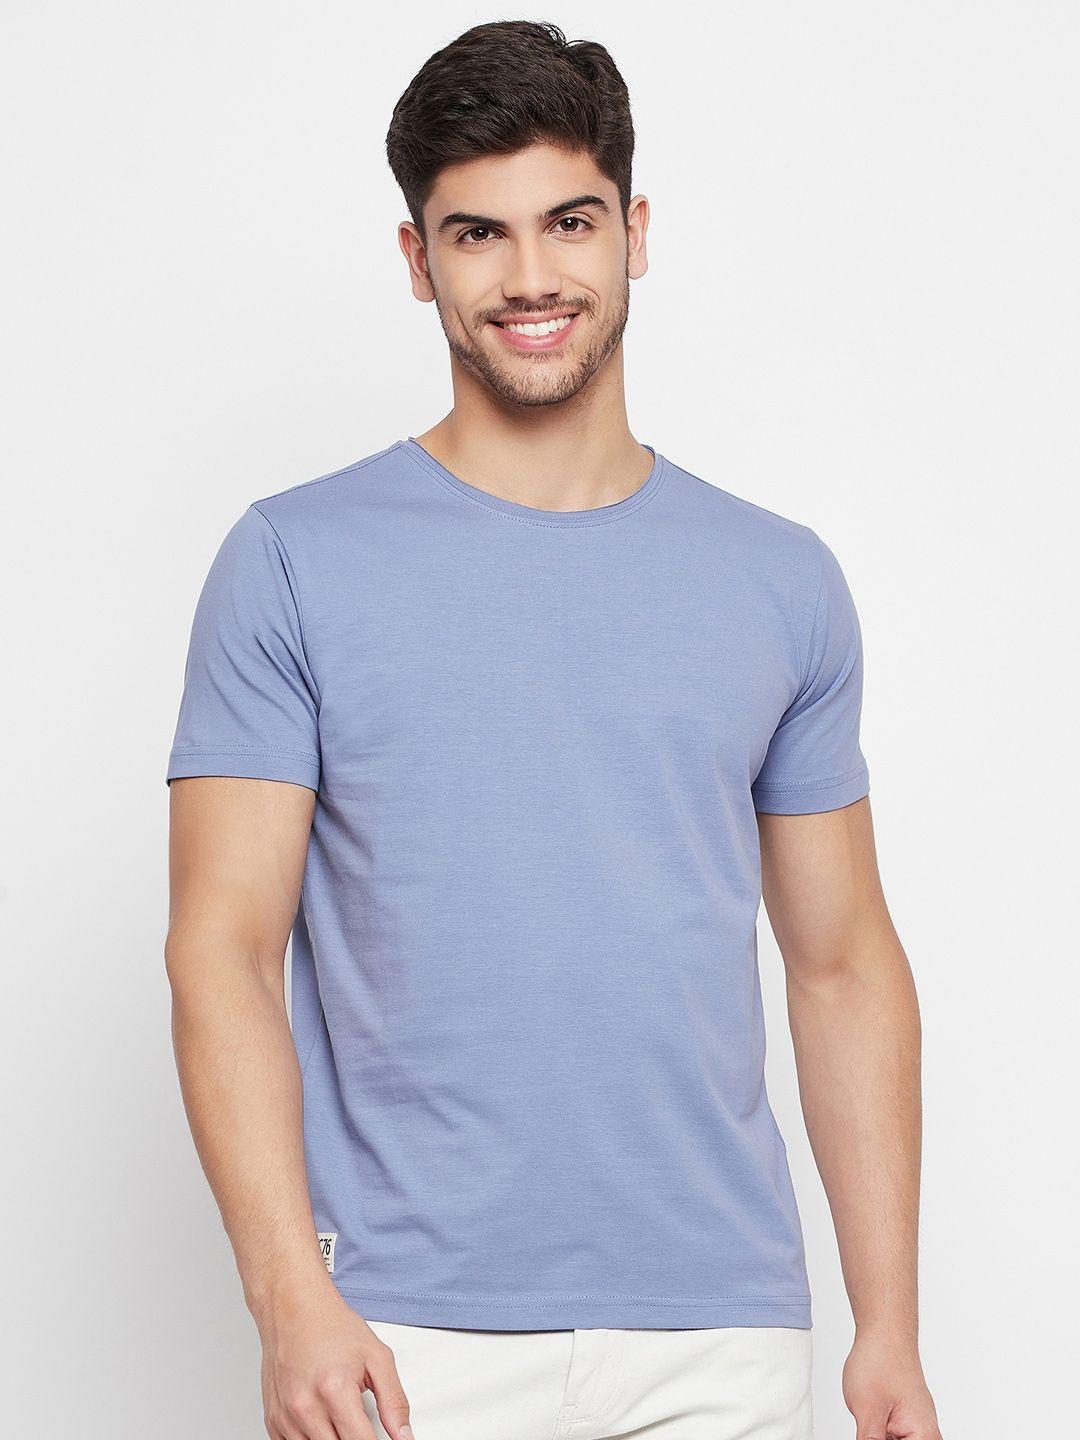 qubic round neck cotton t-shirt